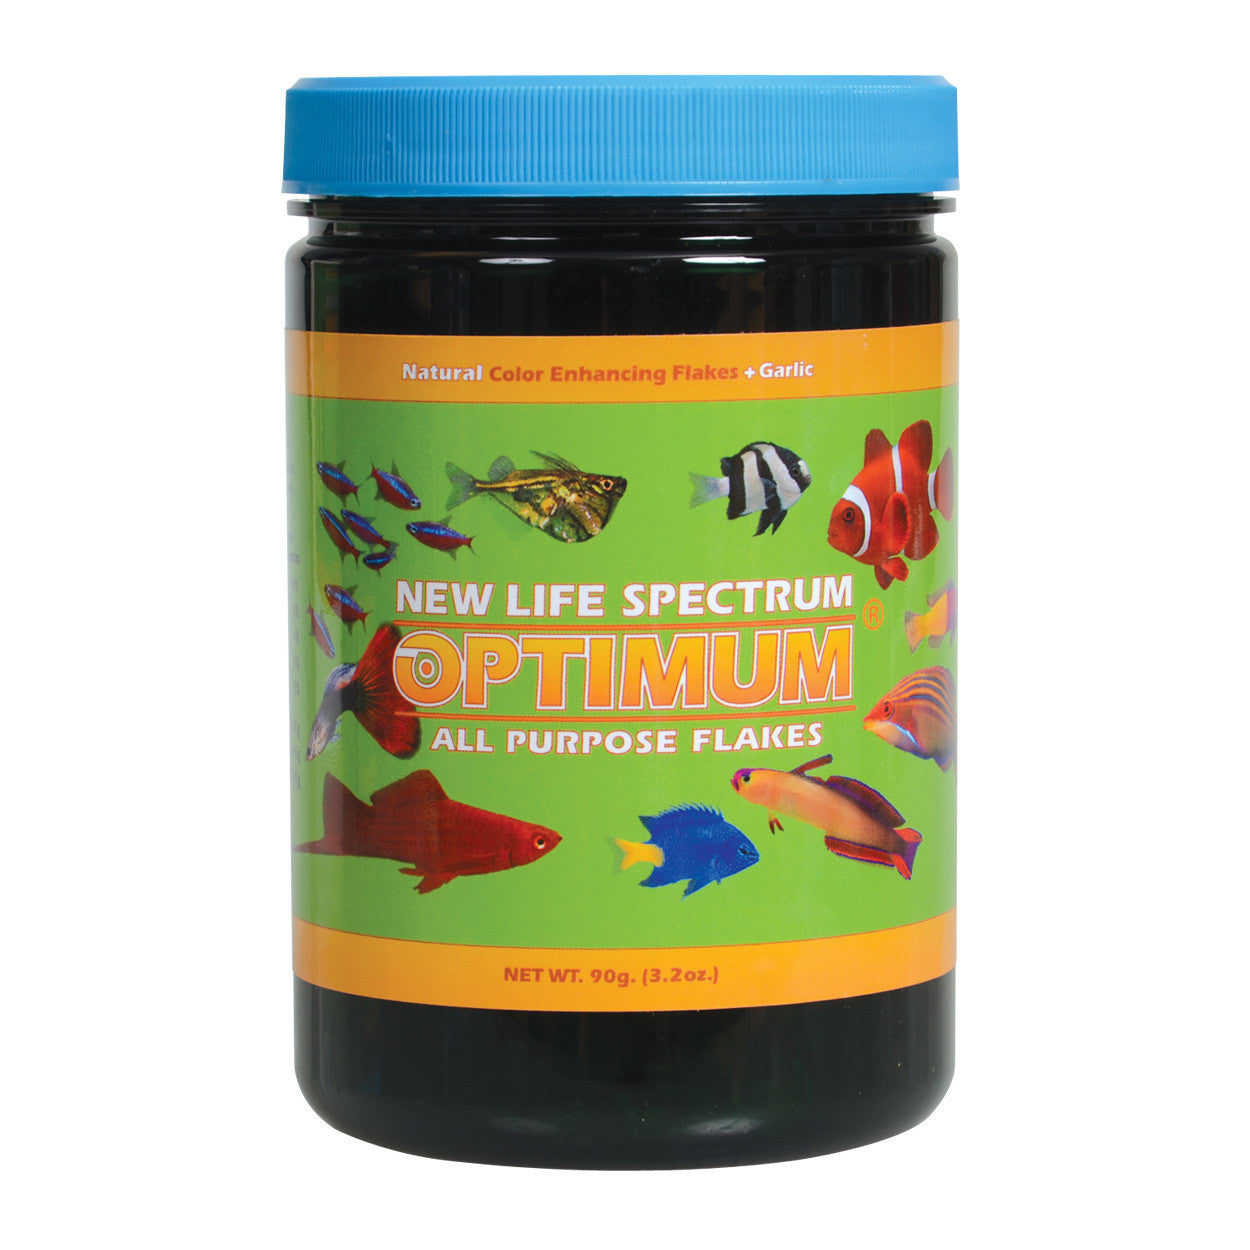 New Life Spectrum Optimum All Purpose Flakes